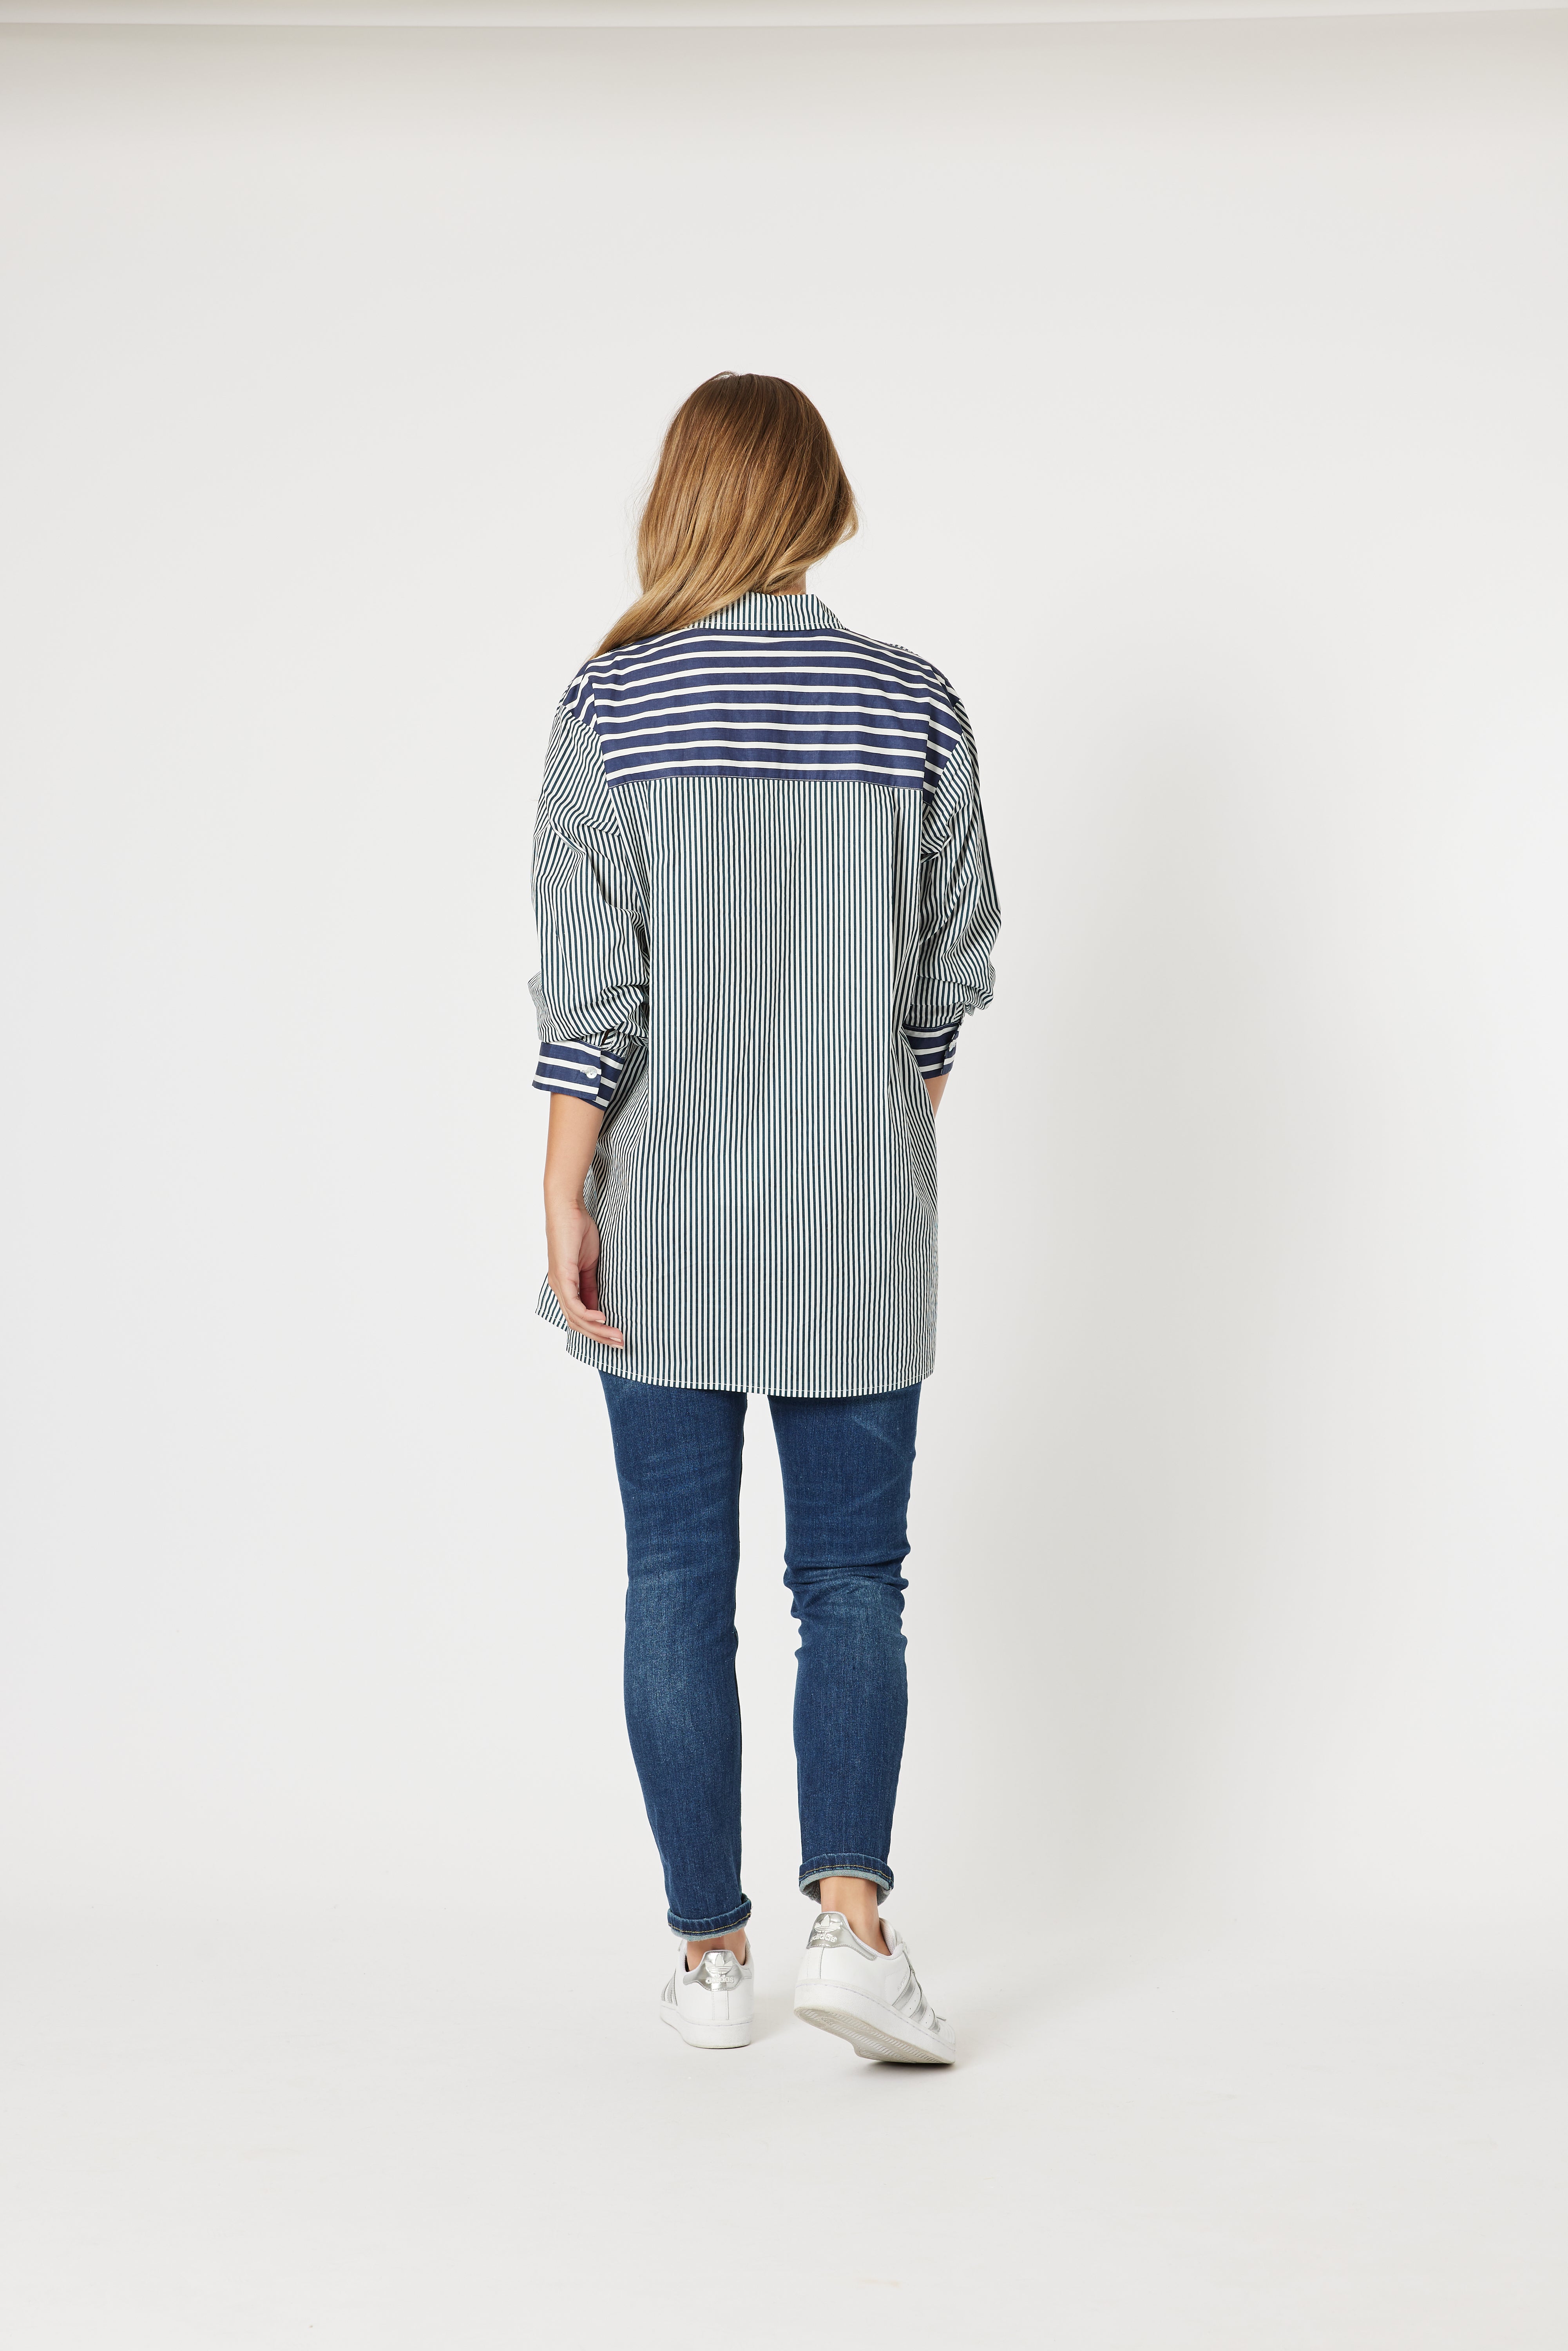 Threadz Anna Stripe Shirt - Navy